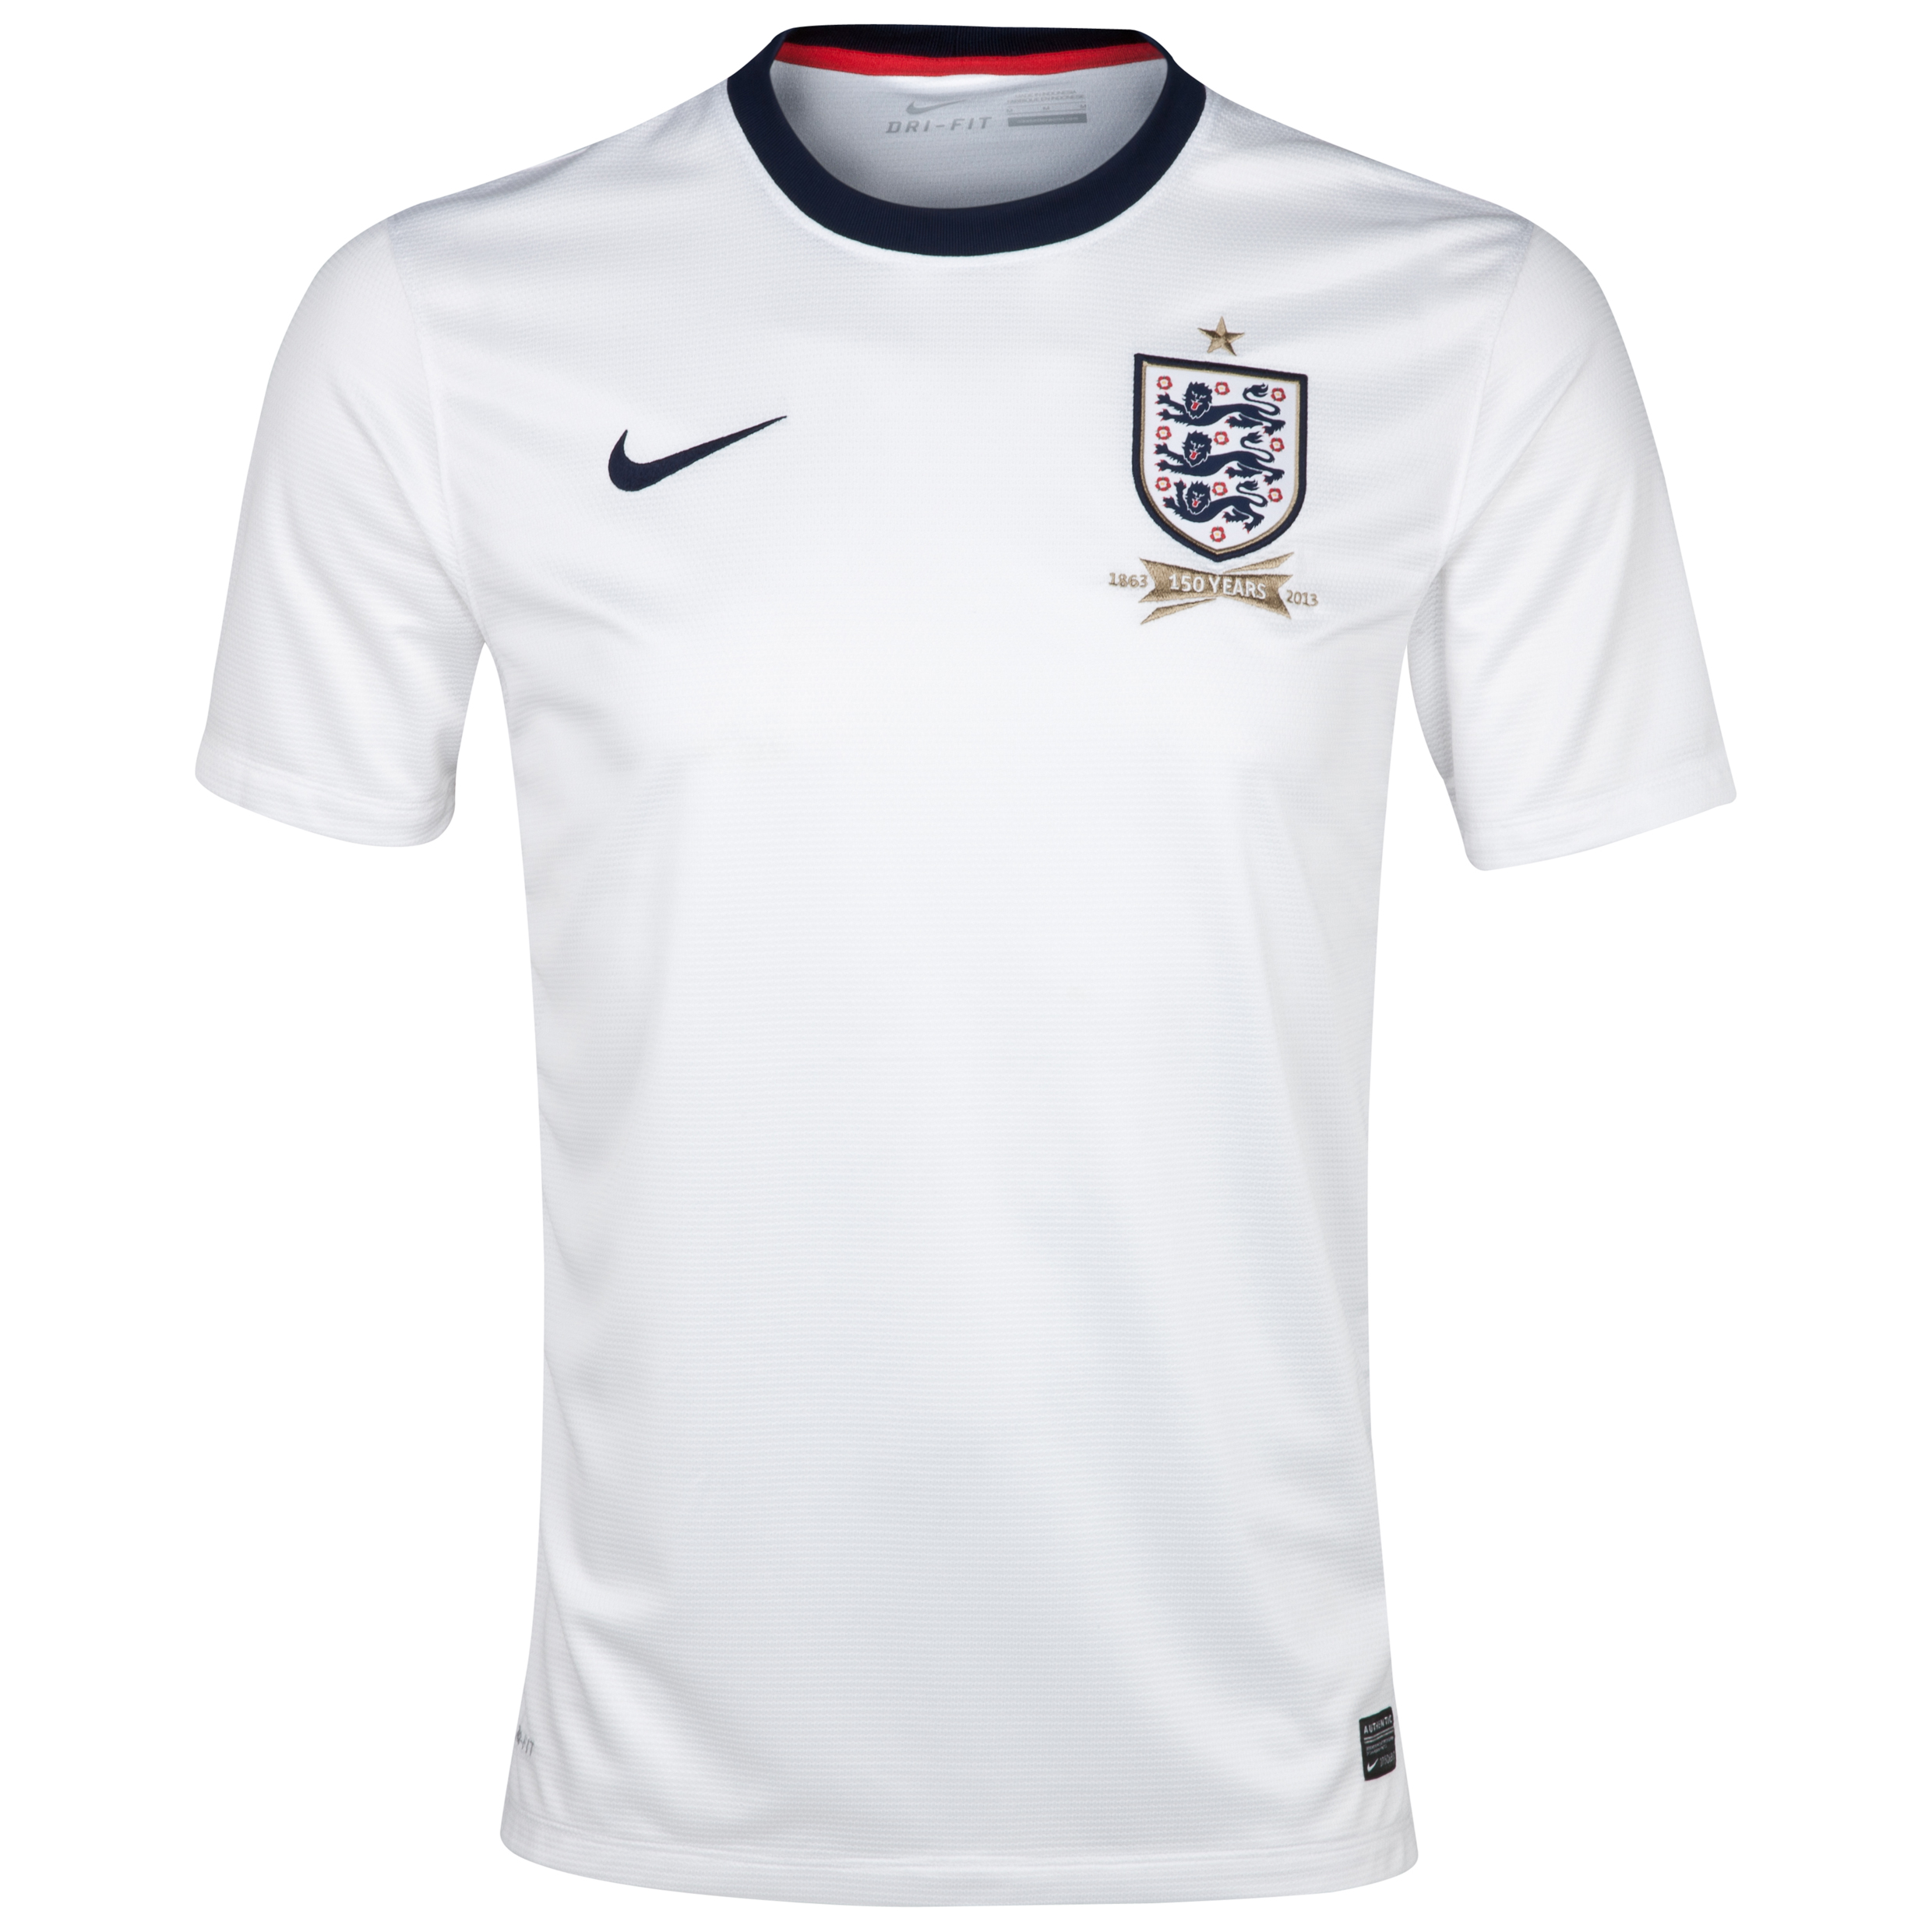 England Home Shirt 2013/14 - Mens White